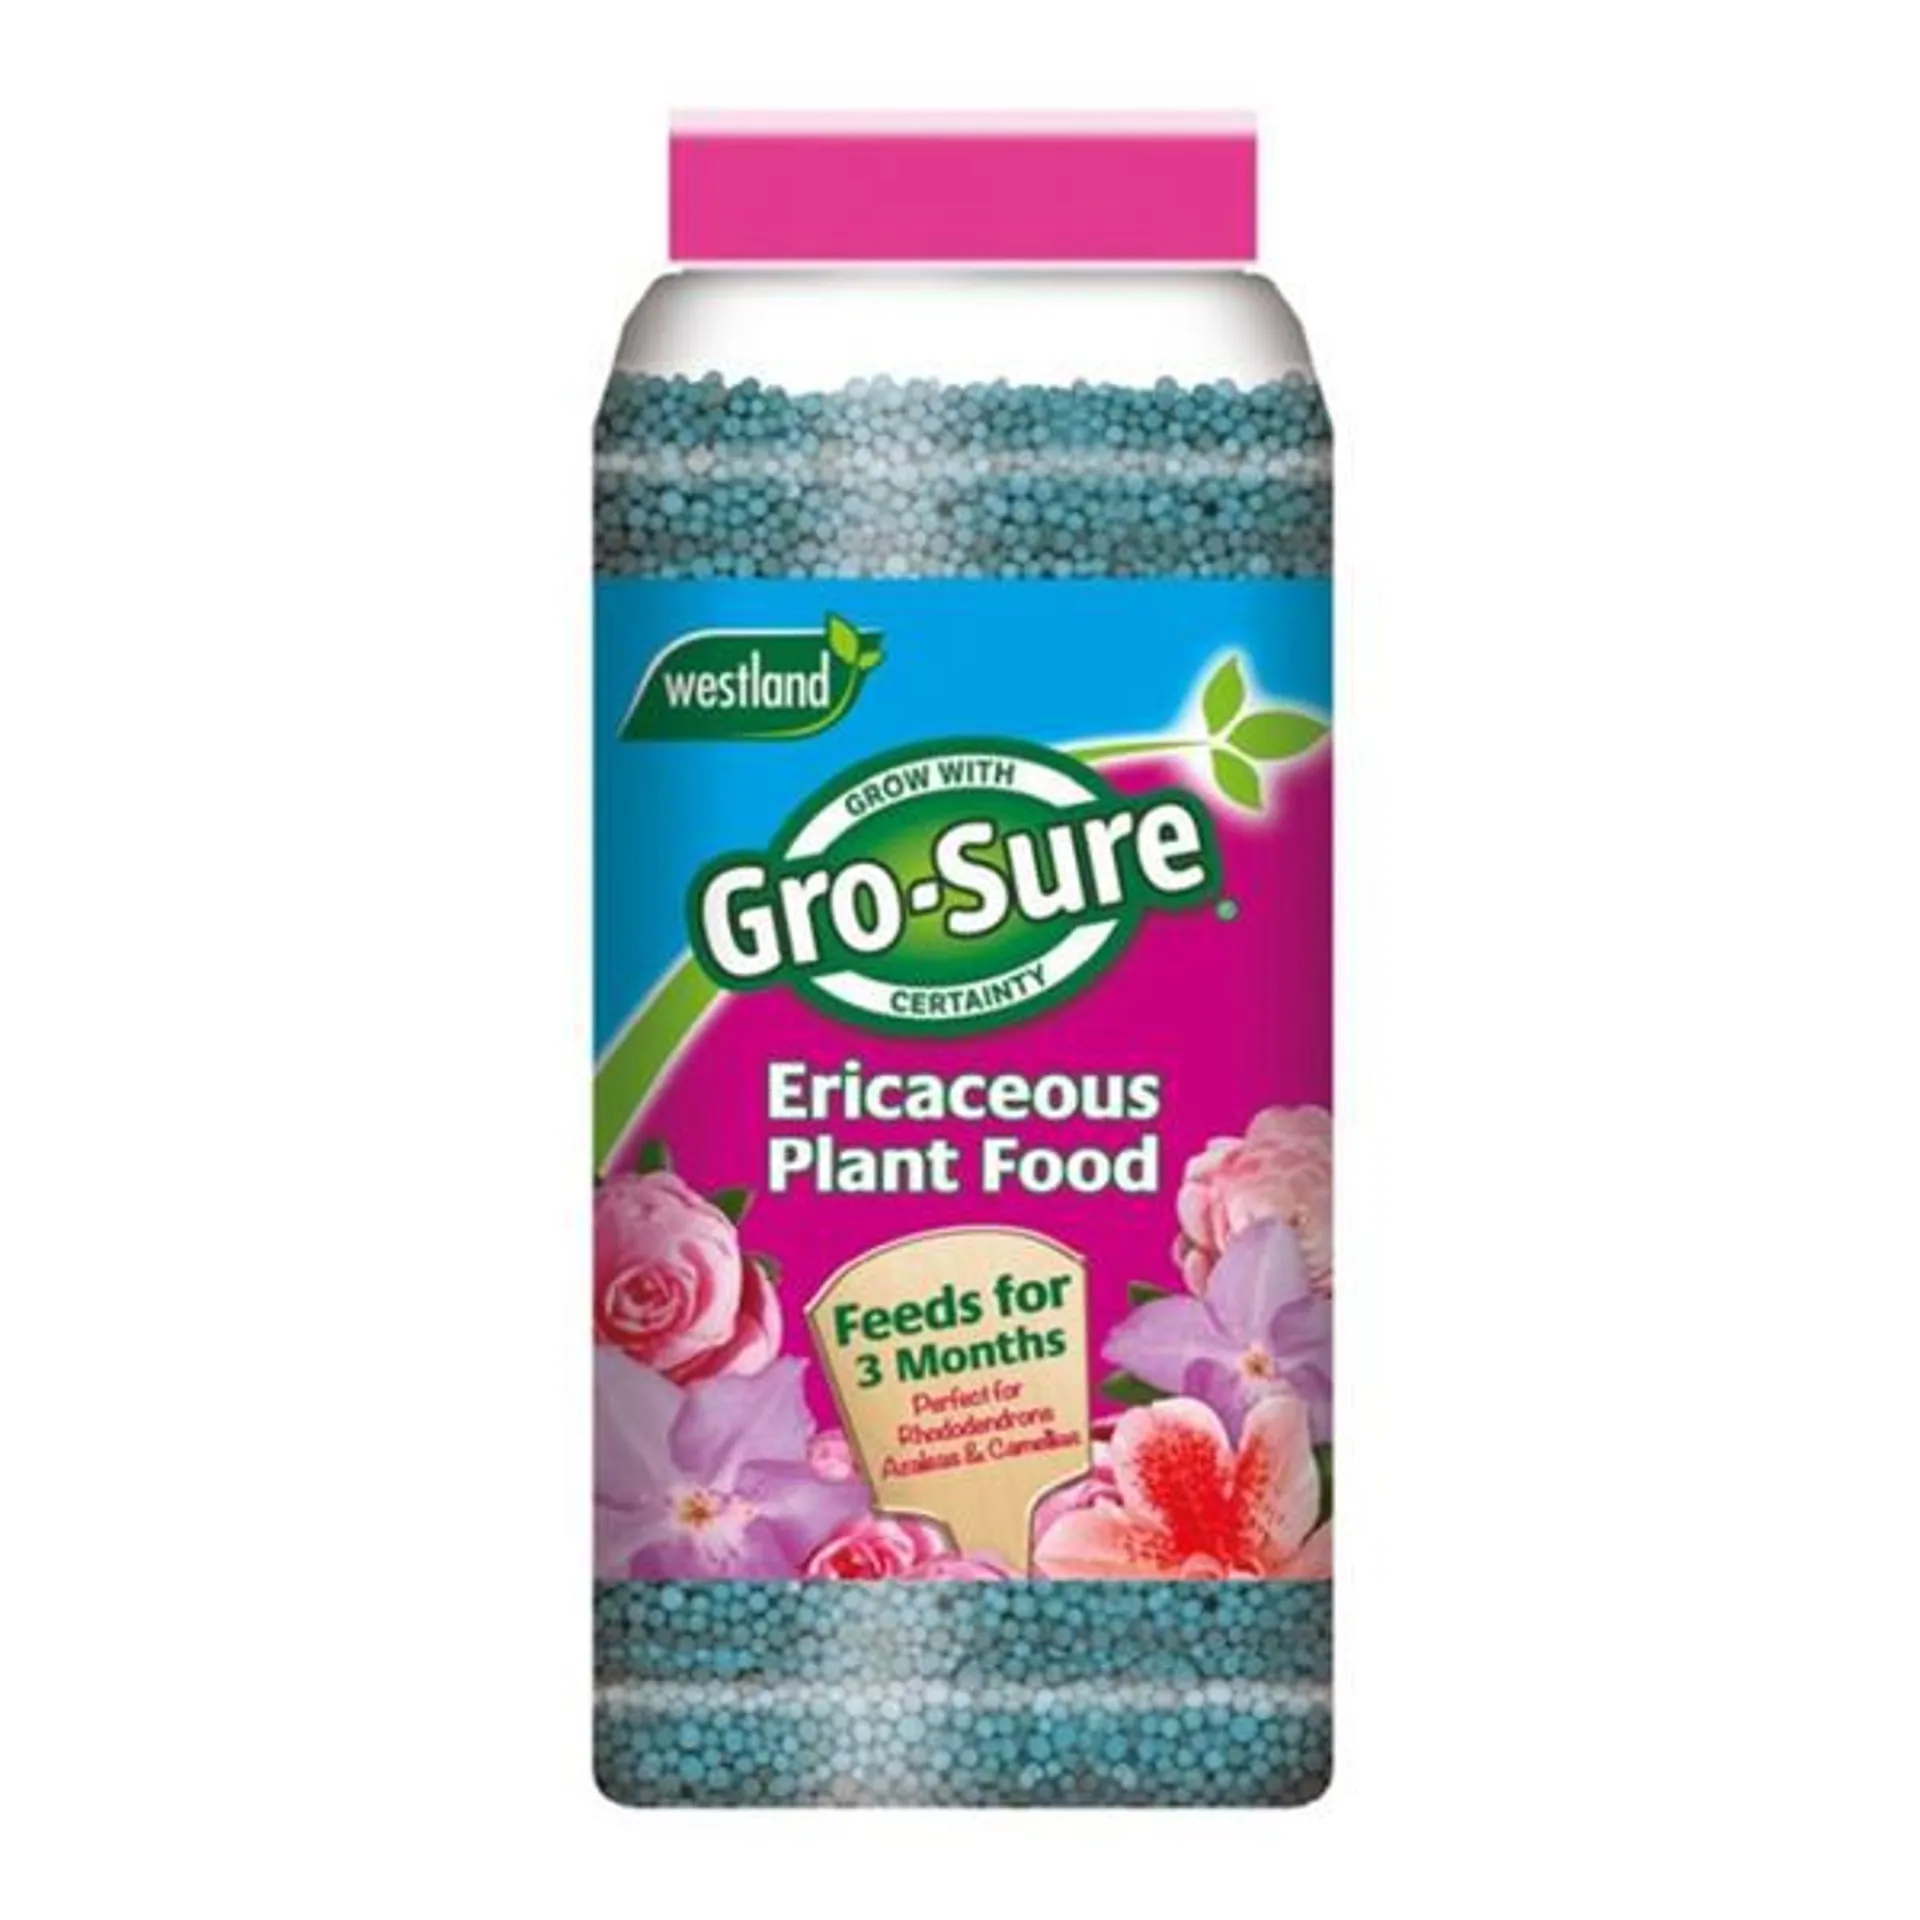 Gro-Sure Ericaceous Plant Food Granules 900G